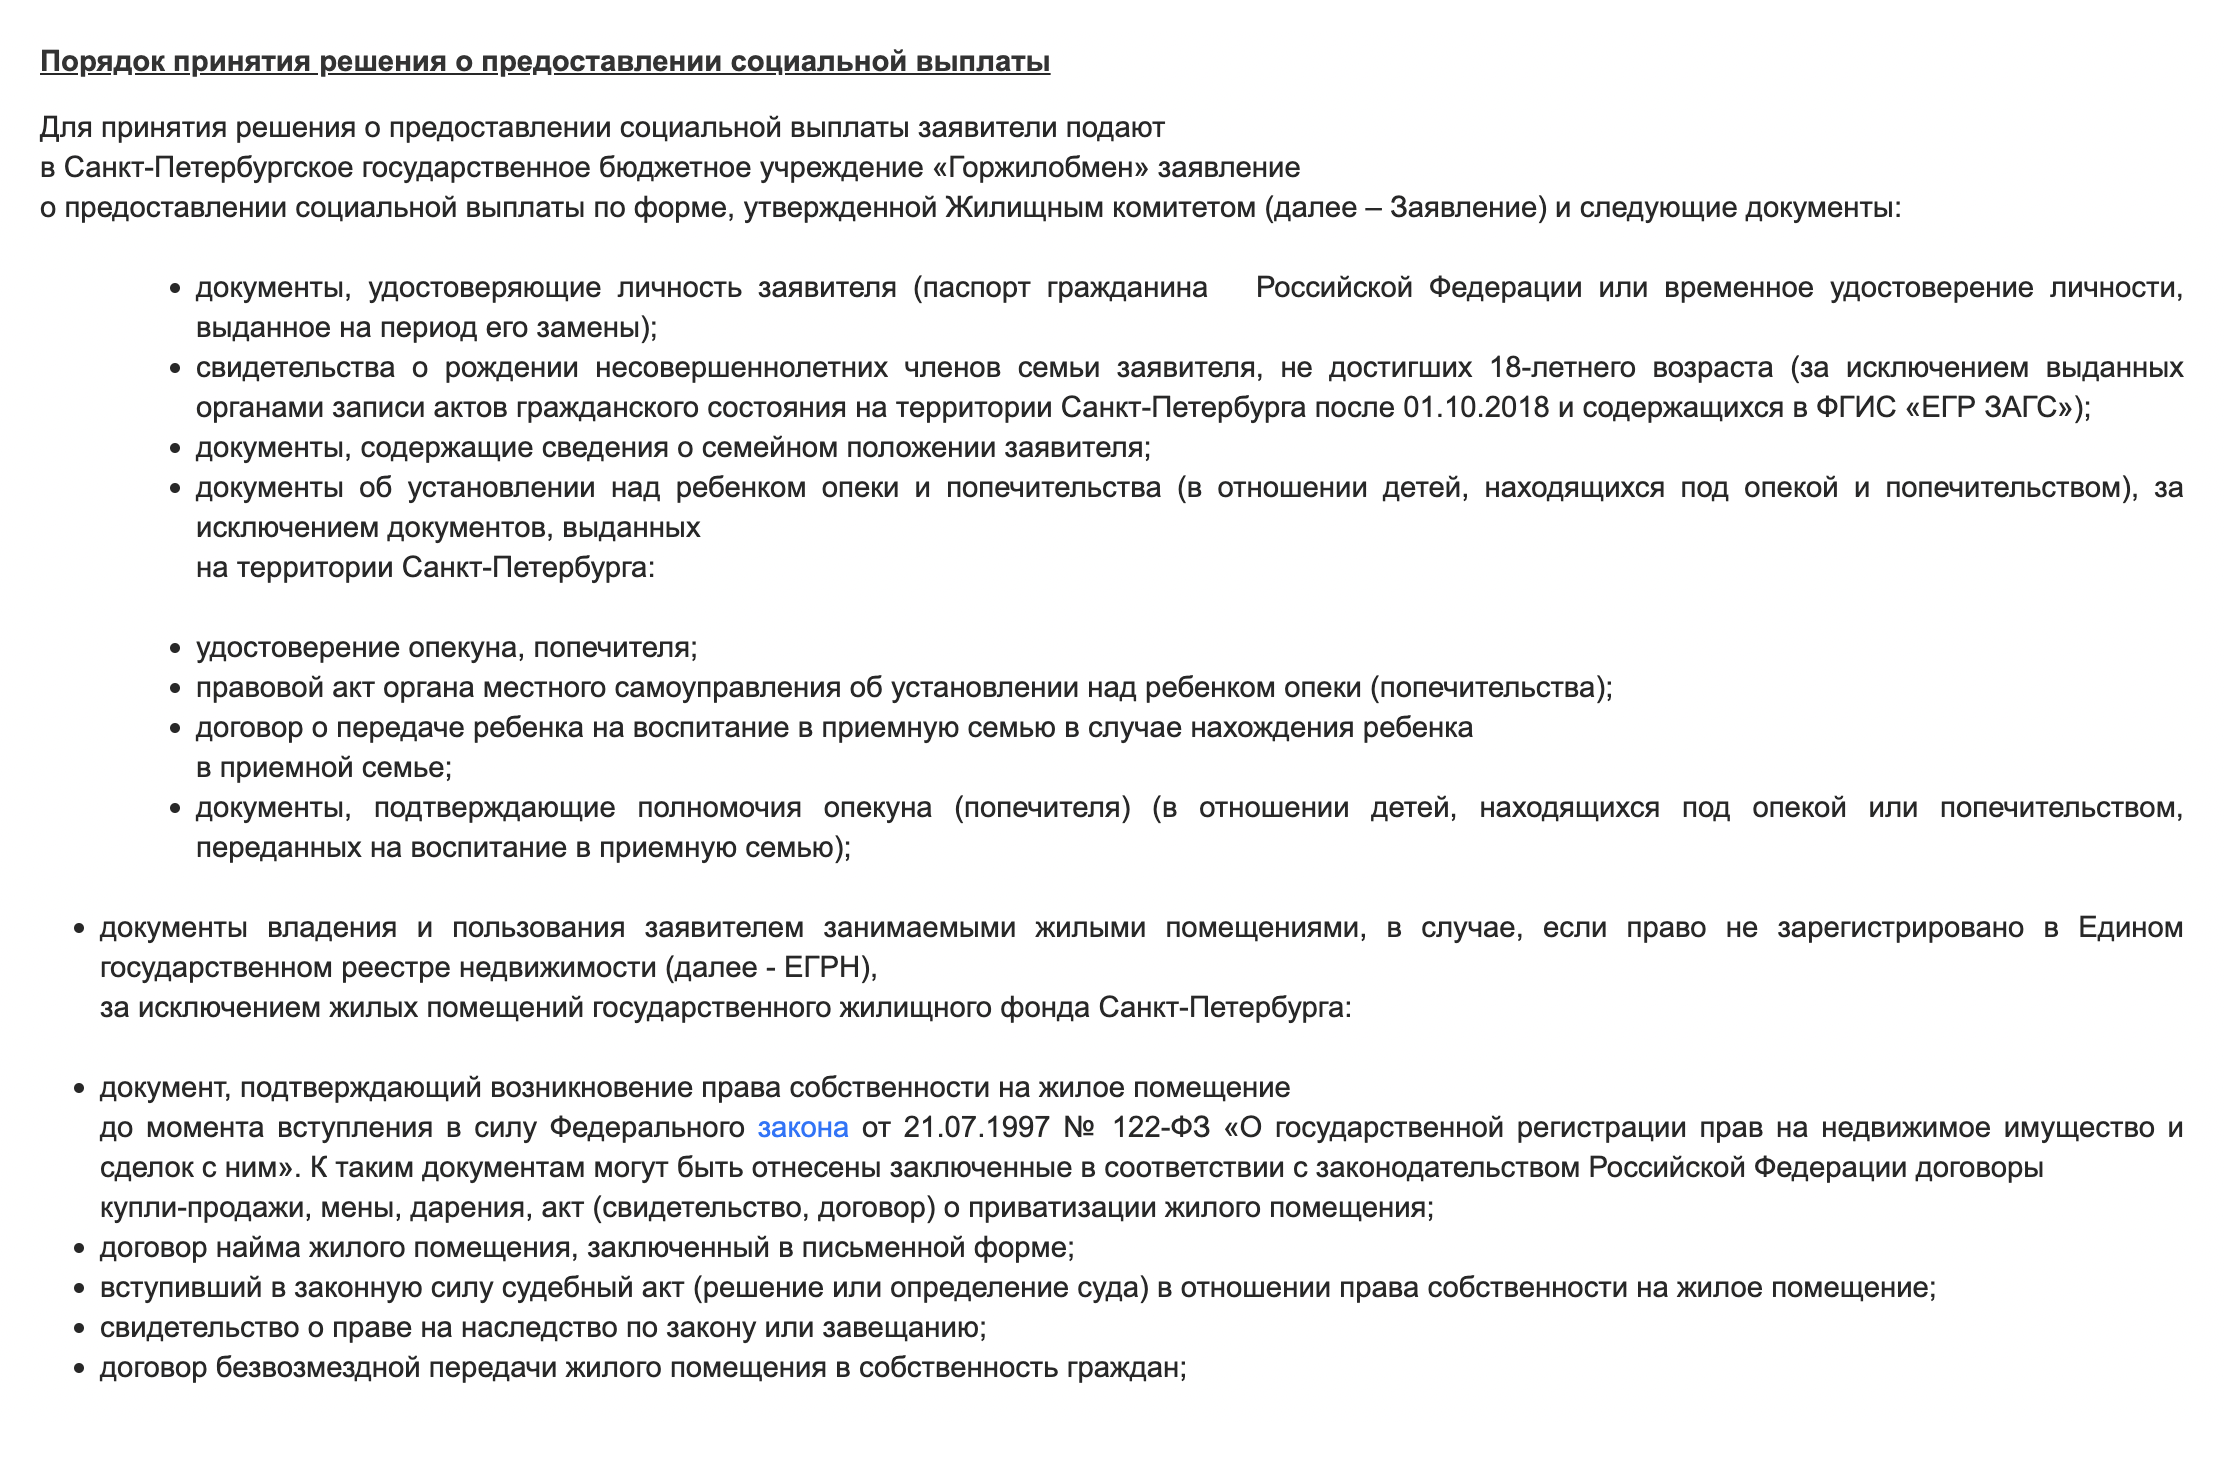 Список документов, которые нужны для социальной выплаты. Источник: obmencity.ru